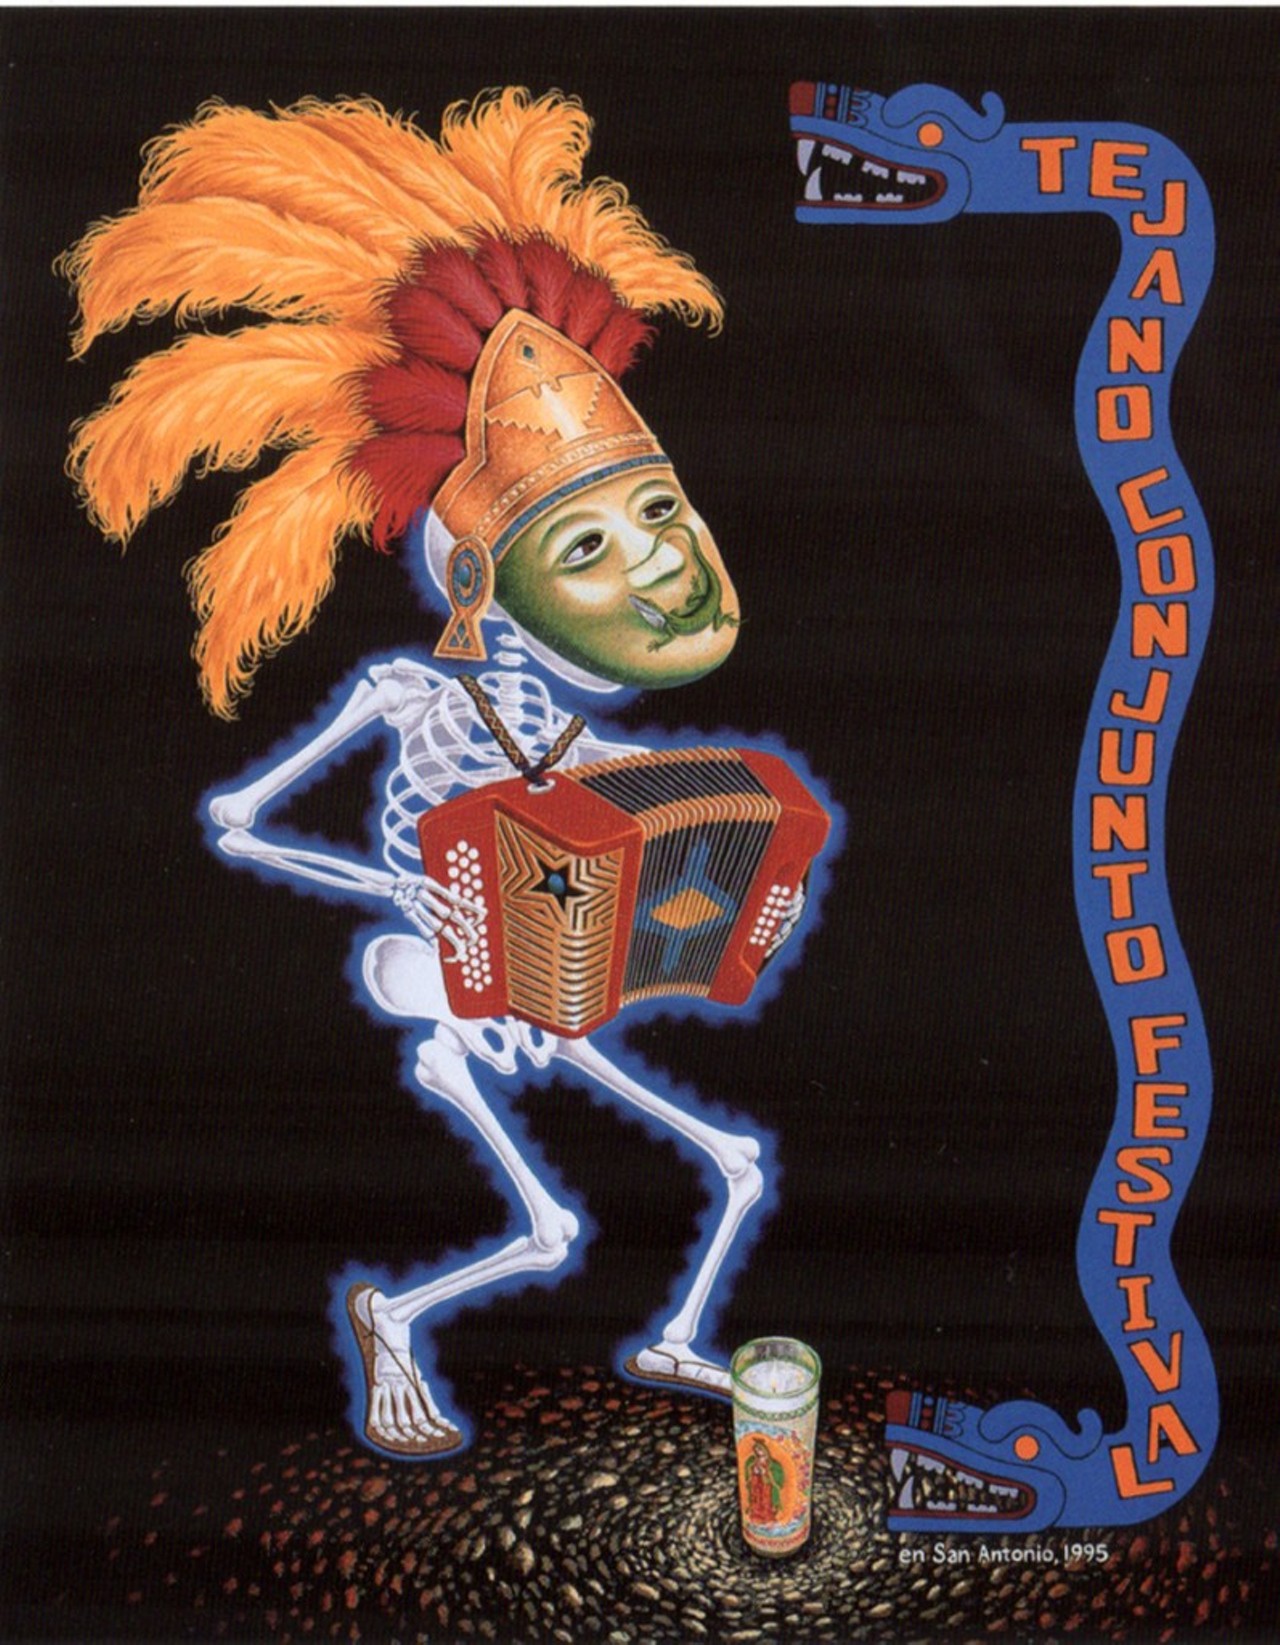 1995 Tejano Conjunto Festival poster by Clemente F. Guzman III